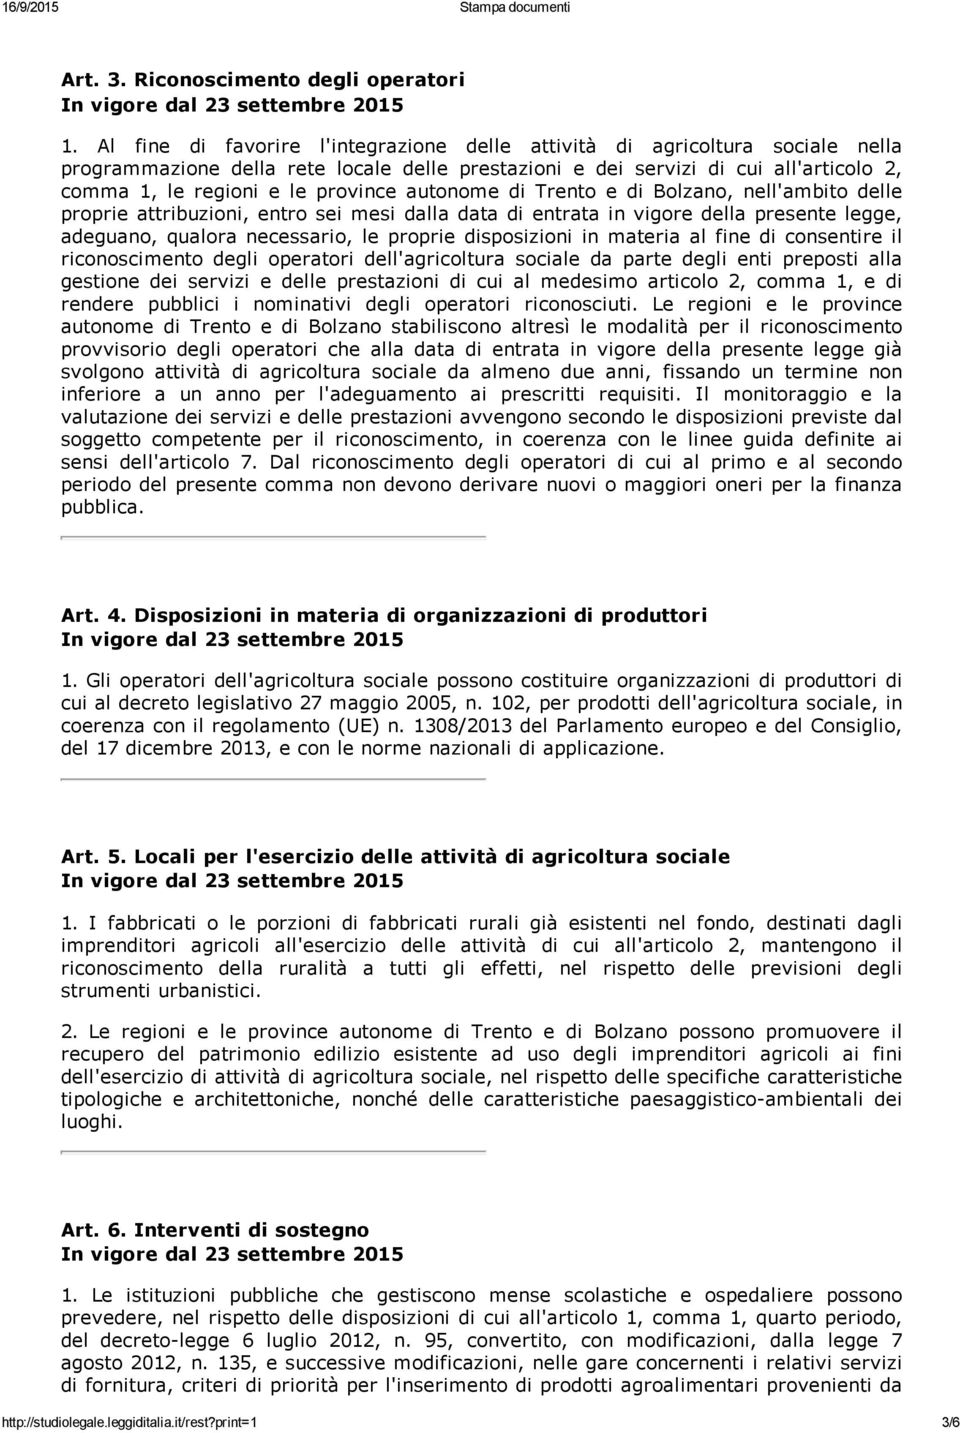 province autonome di Trento e di Bolzano, nell'ambito delle proprie attribuzioni, entro sei mesi dalla data di entrata in vigore della presente legge, adeguano, qualora necessario, le proprie